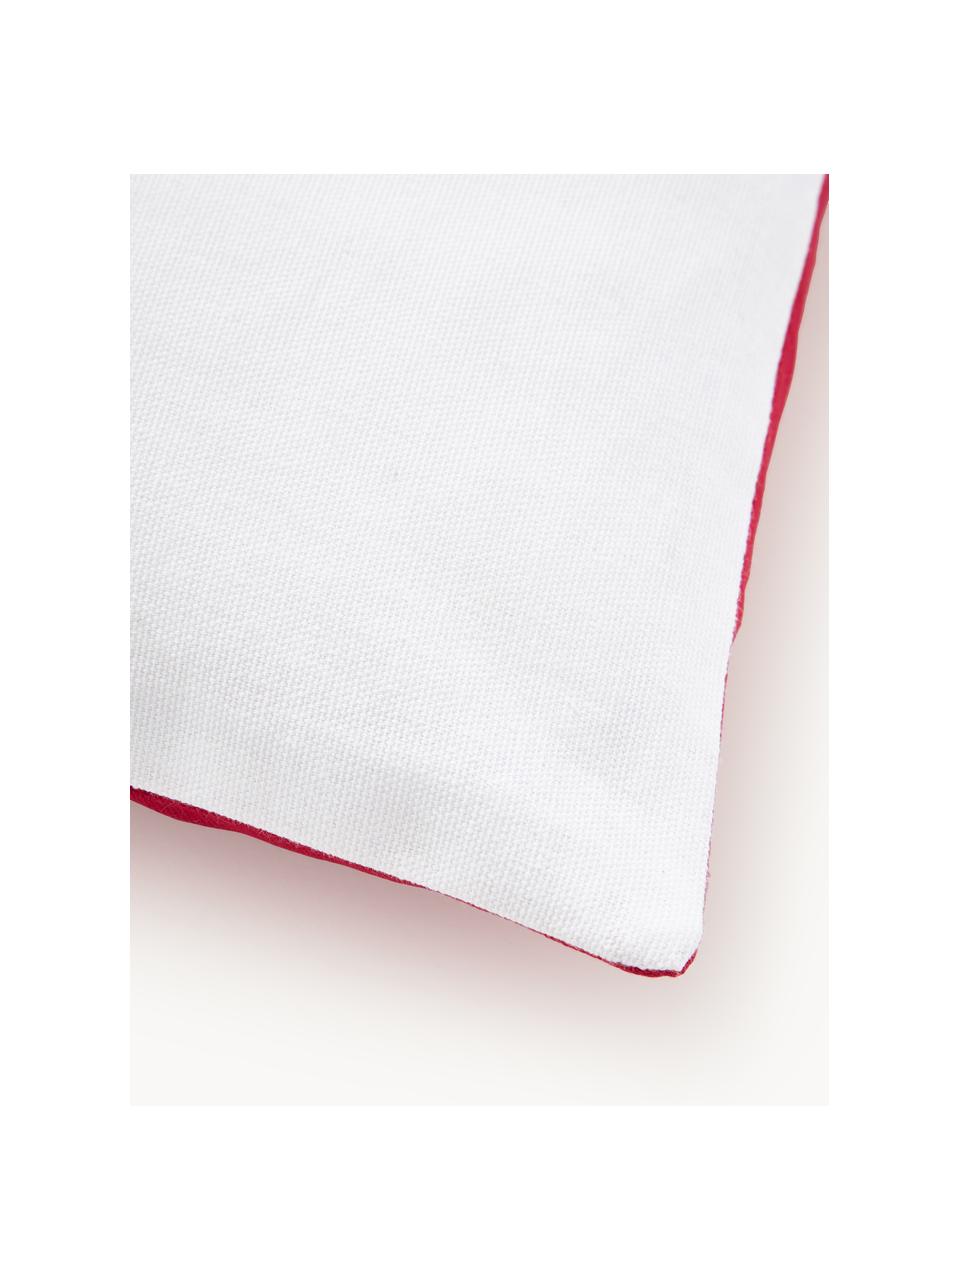 Vyšívaný povlak na polštář s vánočním motivem Tinsel, 100 % bavlna, Bílá, více barev, červená, Š 45 cm, D 45 cm